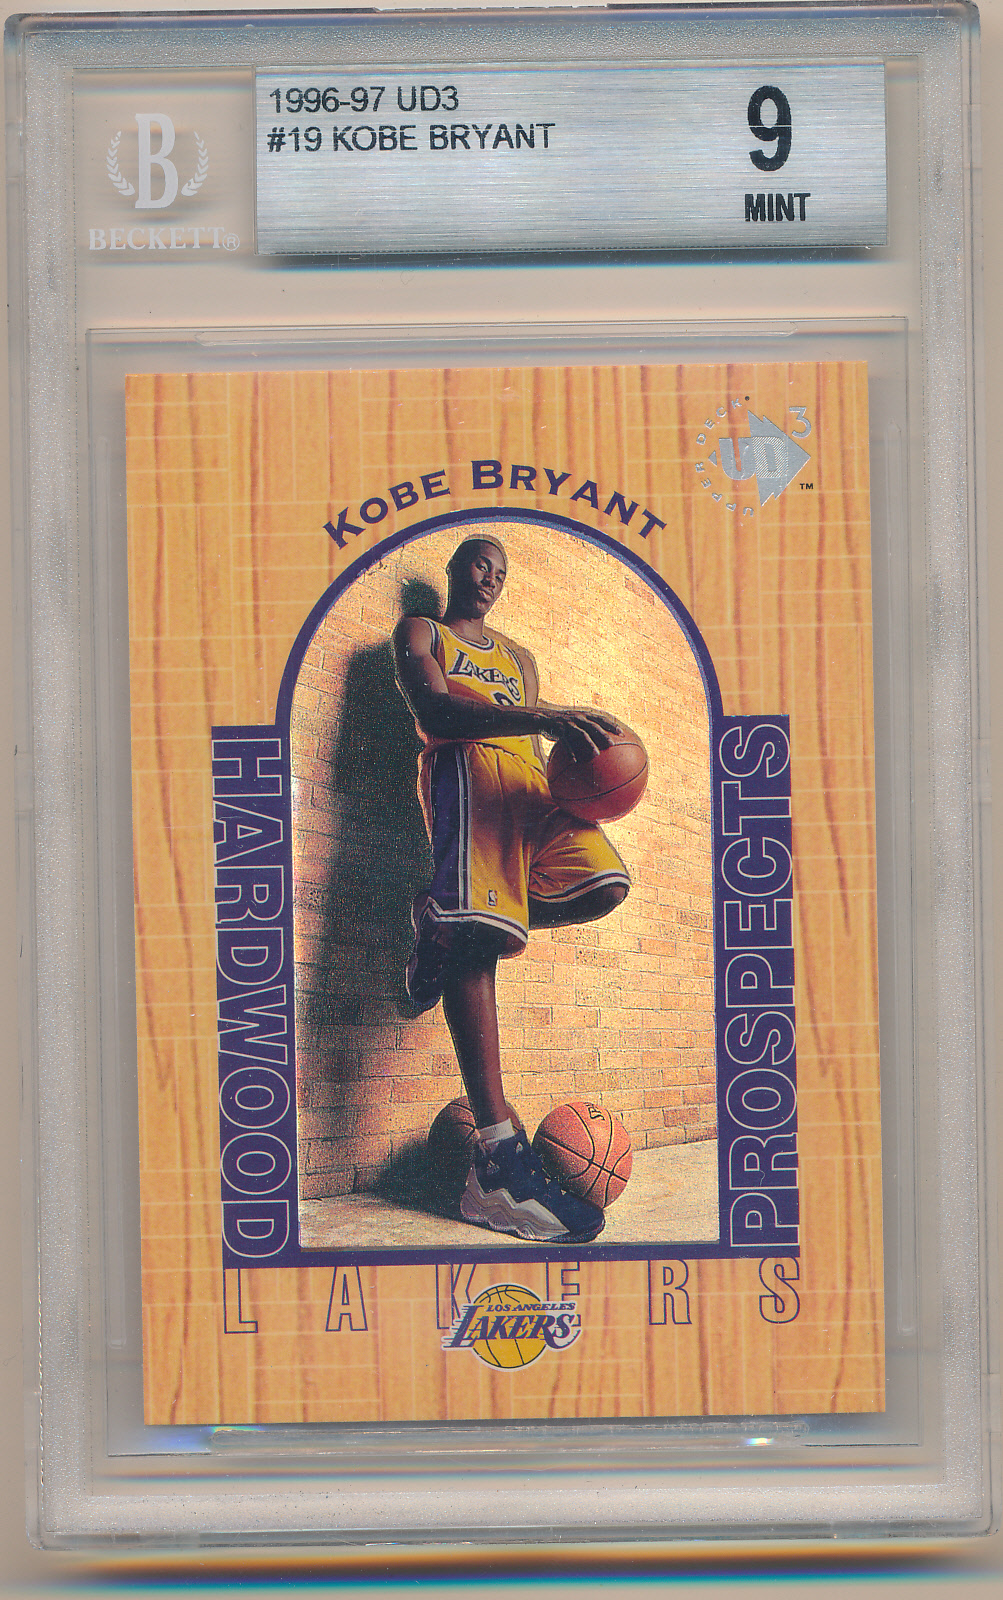 1996-97 UD3 #19 Kobe Bryant BGS 9 MINT Z27180